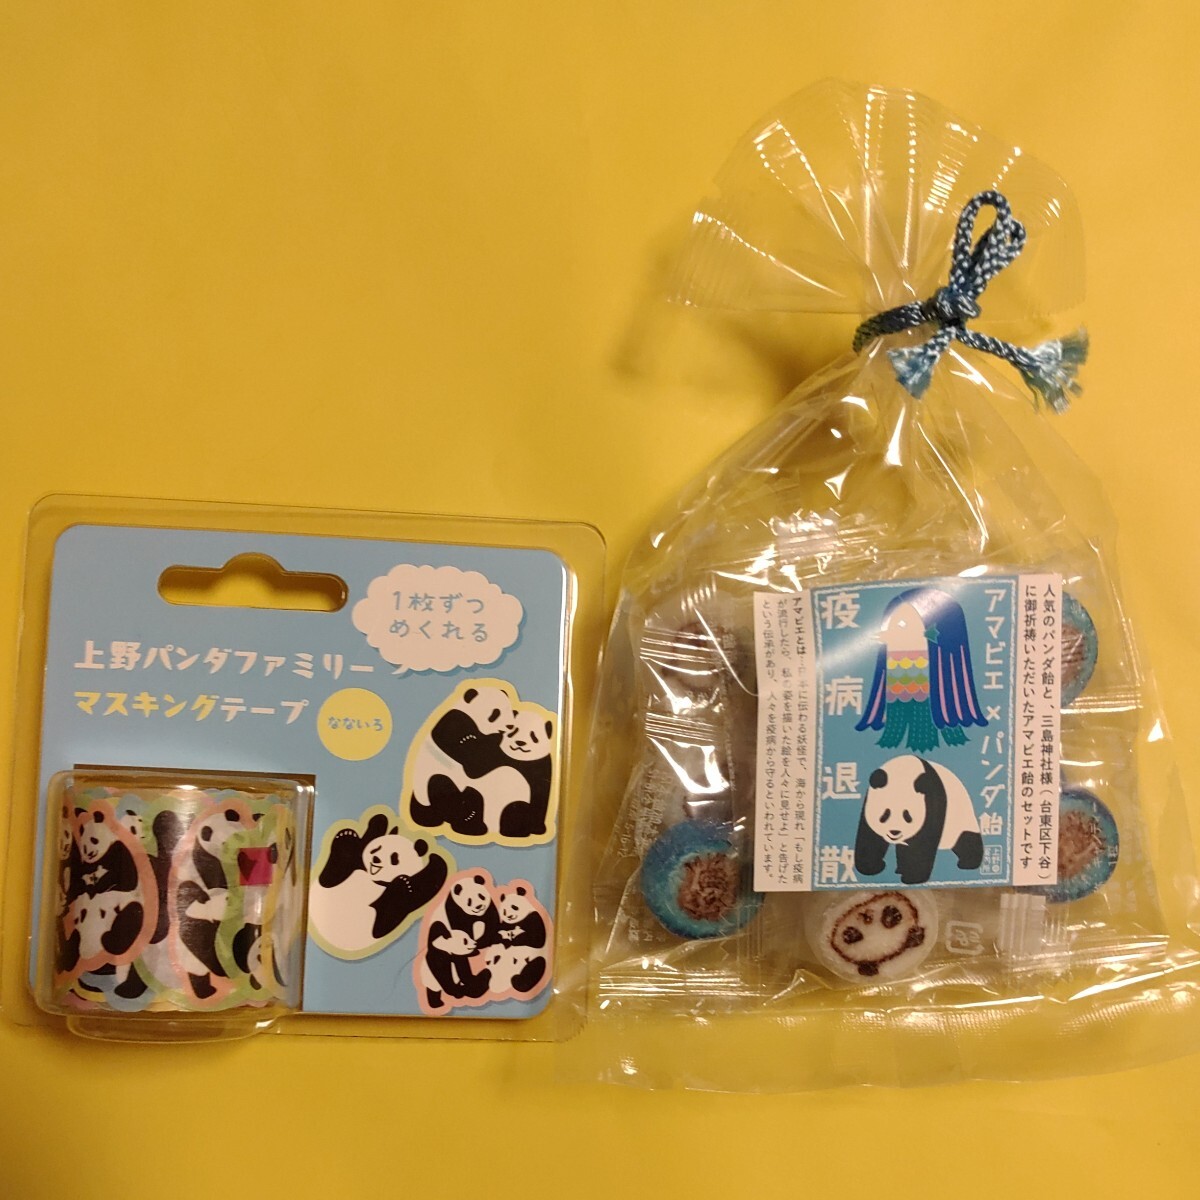 シャンシャン 上野パンダ Panda 上野限定特典カード 5点 スタンプノート マスキングテープ パンダ飴 パンダハガキ タンタン パンダの画像8